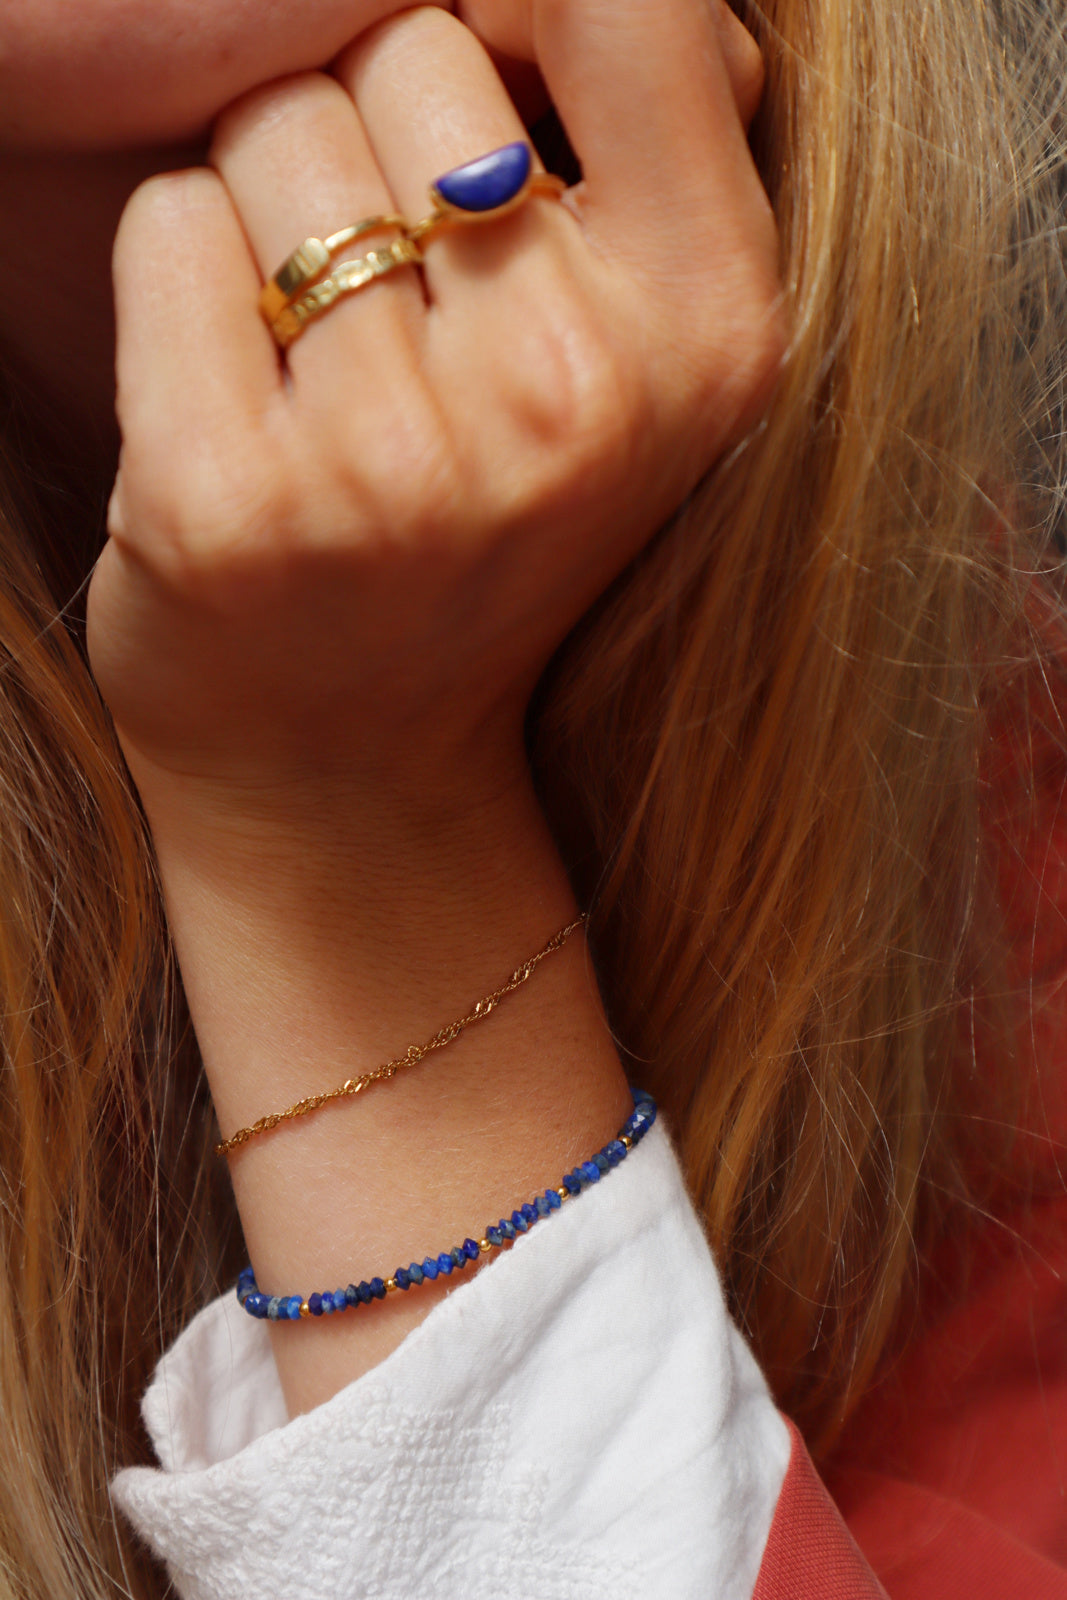 Uma armband met lapis lazuli